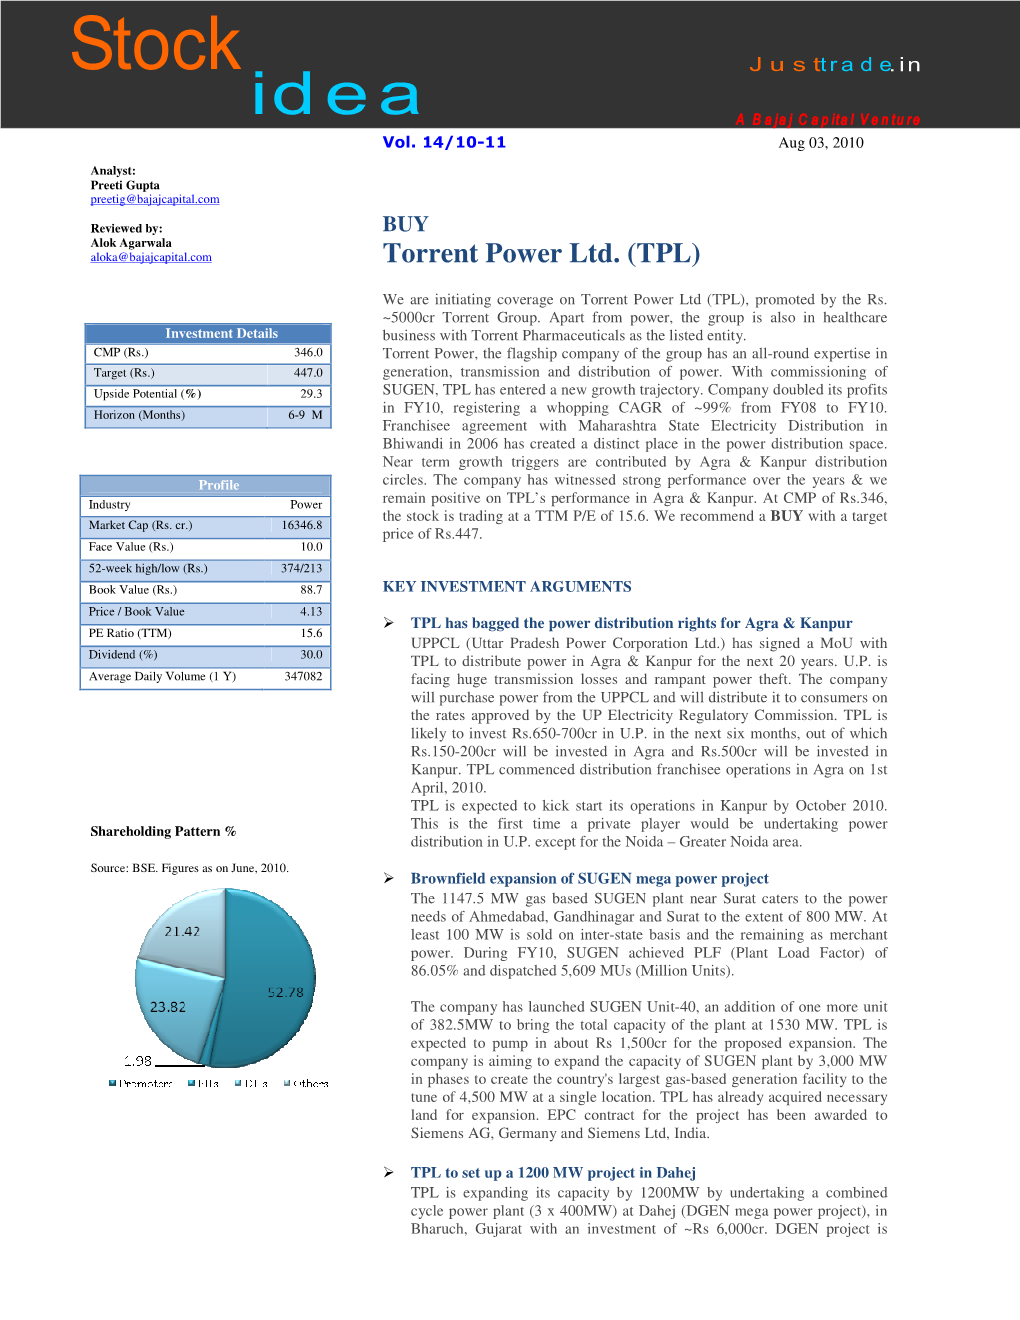 Torrent Power Ltd. (TPL)